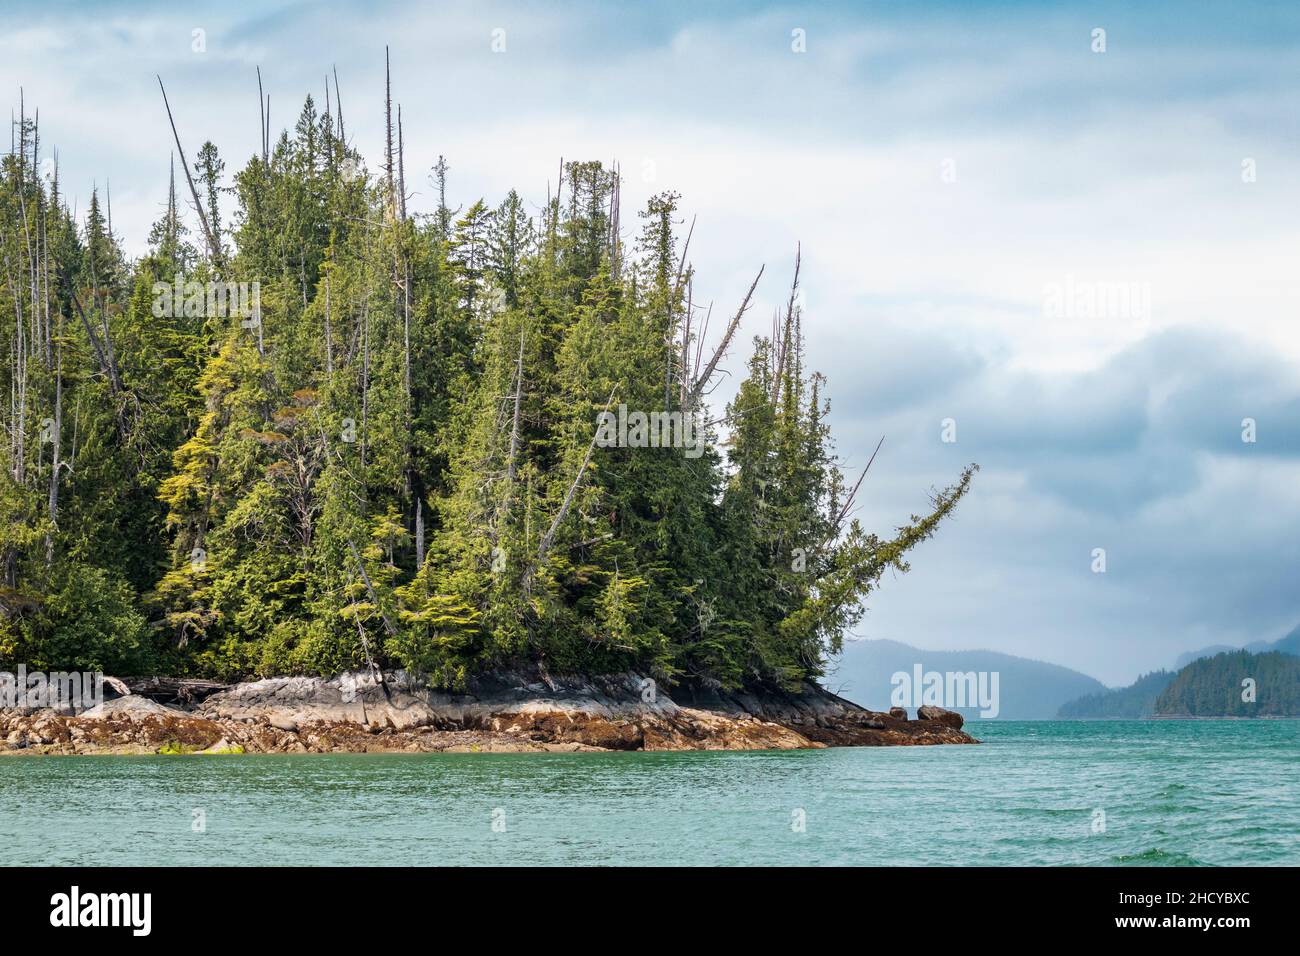 Eine bewaldete Küstenlinie der Insel nahe der Mündung des Kingcome Inlet (British Columbia). Die Gletscherschmelze trägt zur bemerkenswerten Farbe des Meerwassers bei. Stockfoto